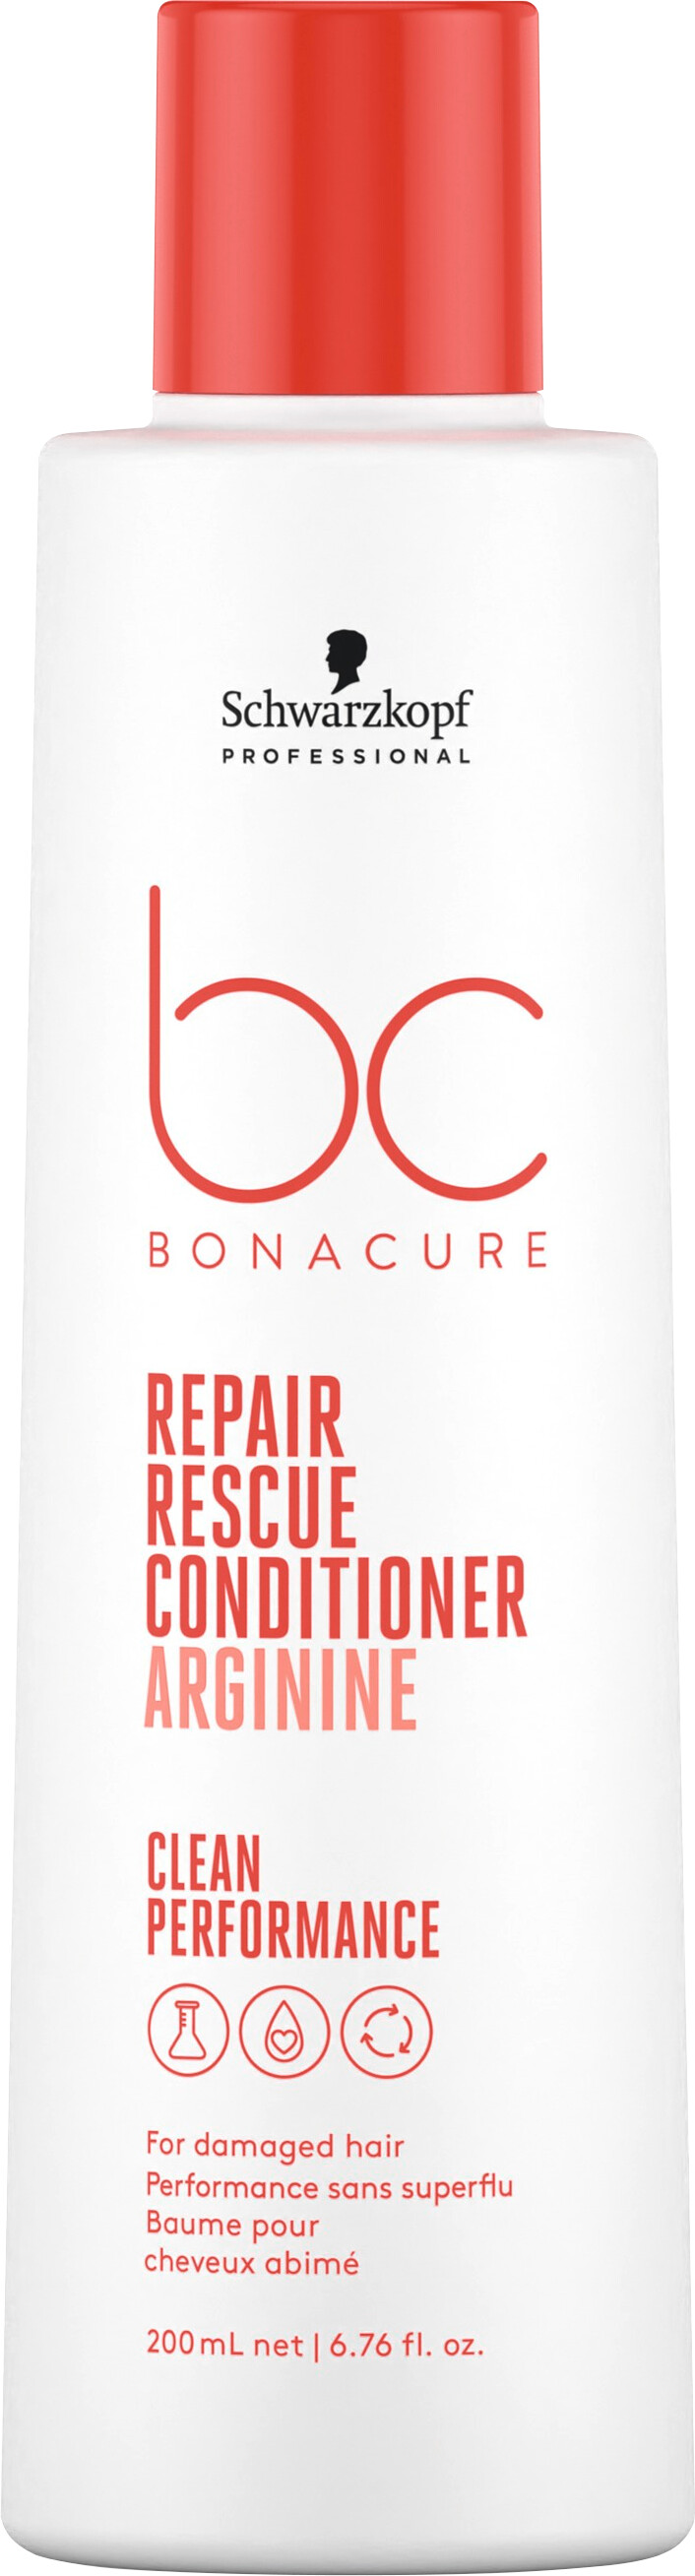 Schwarzkopf Professional BC Bonacure Repair Rescue Conditioner 200ml